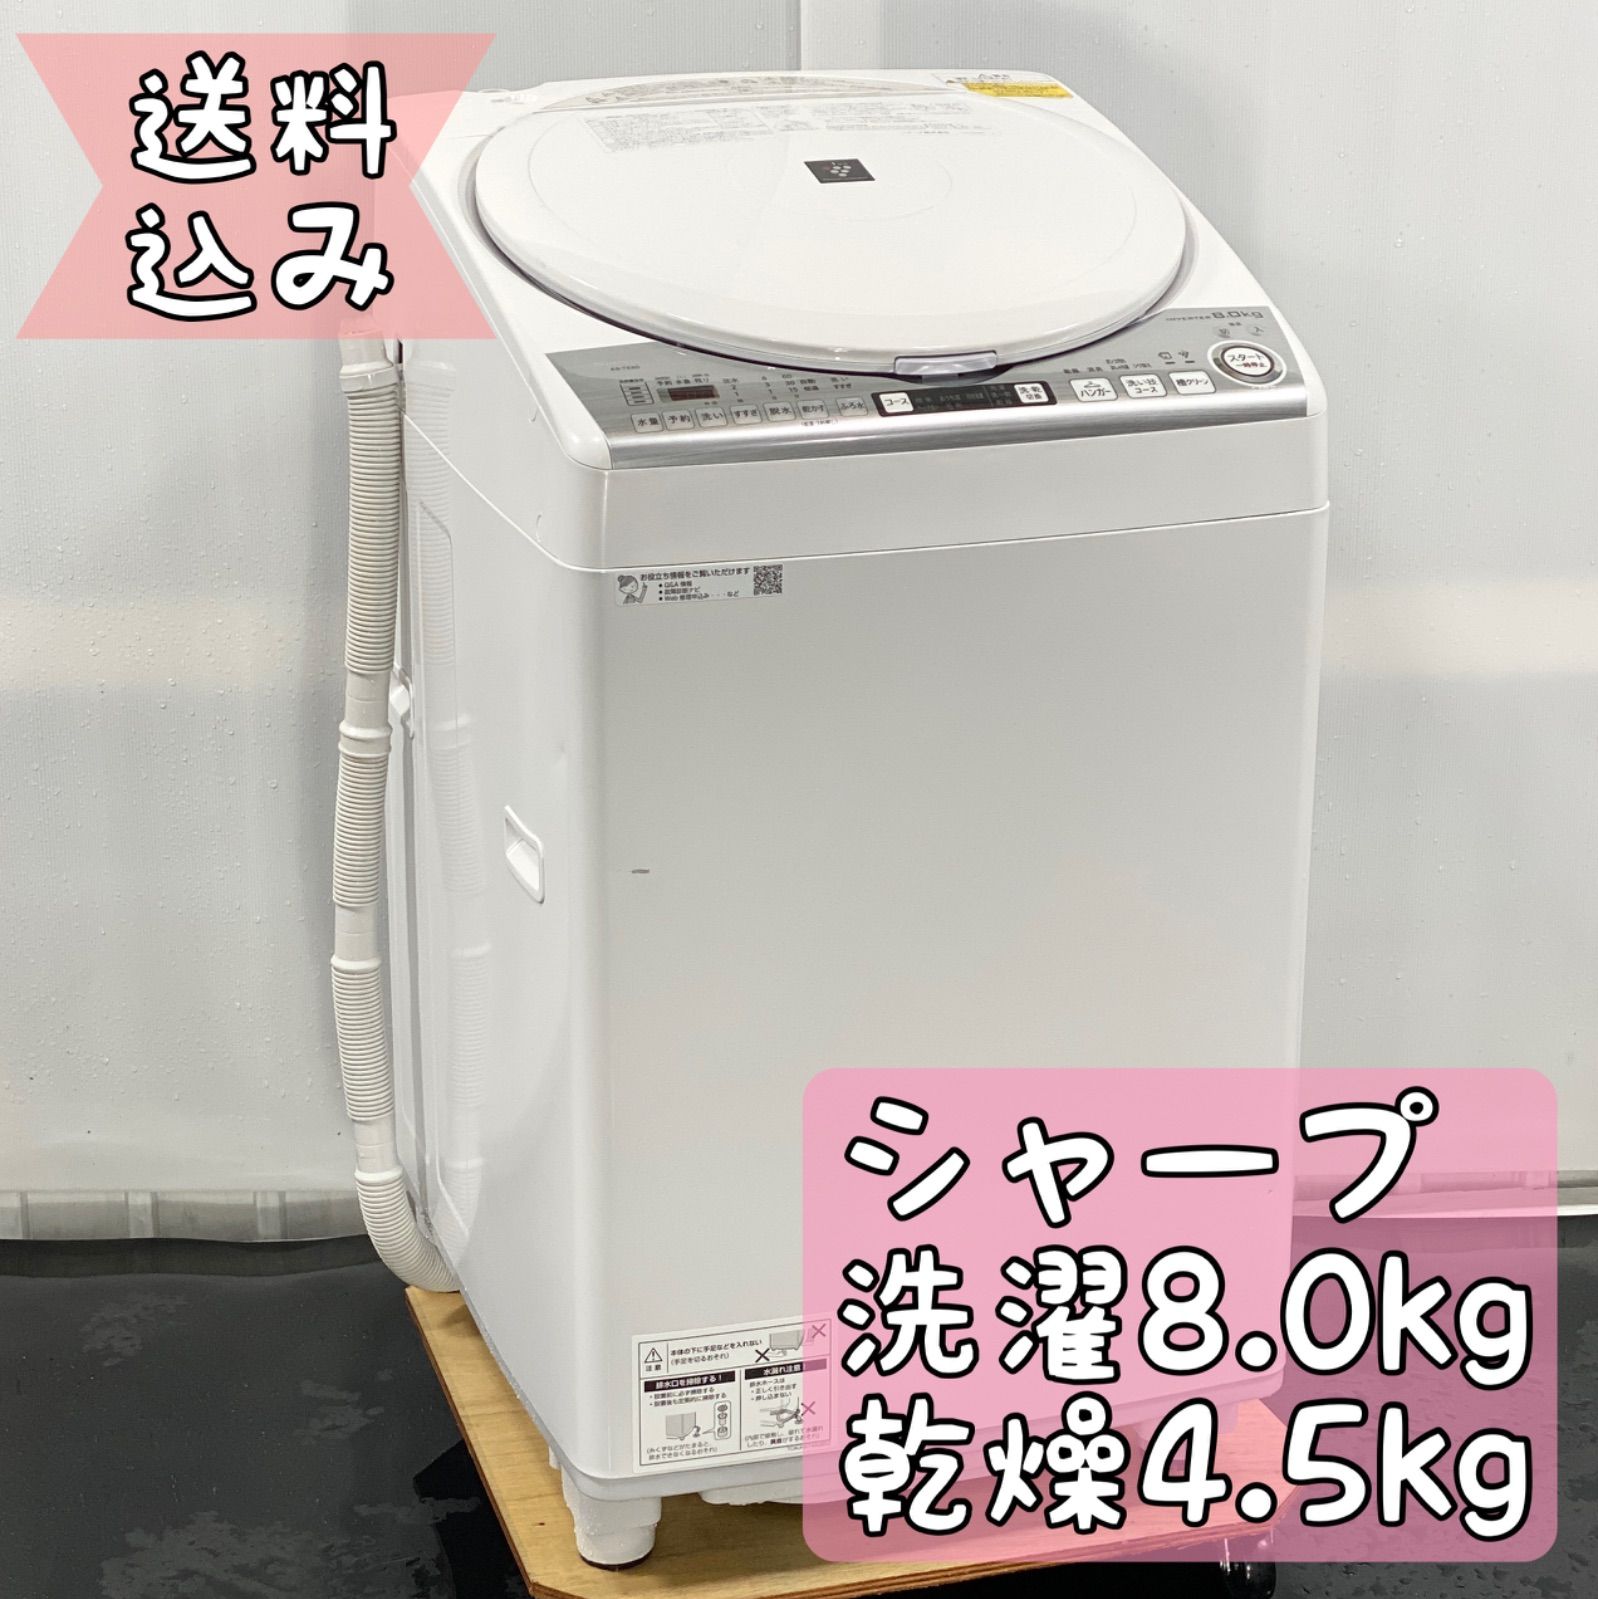 SHARPタテ型洗濯乾燥機 8kg 東京 神奈川 格安配送 - 生活家電